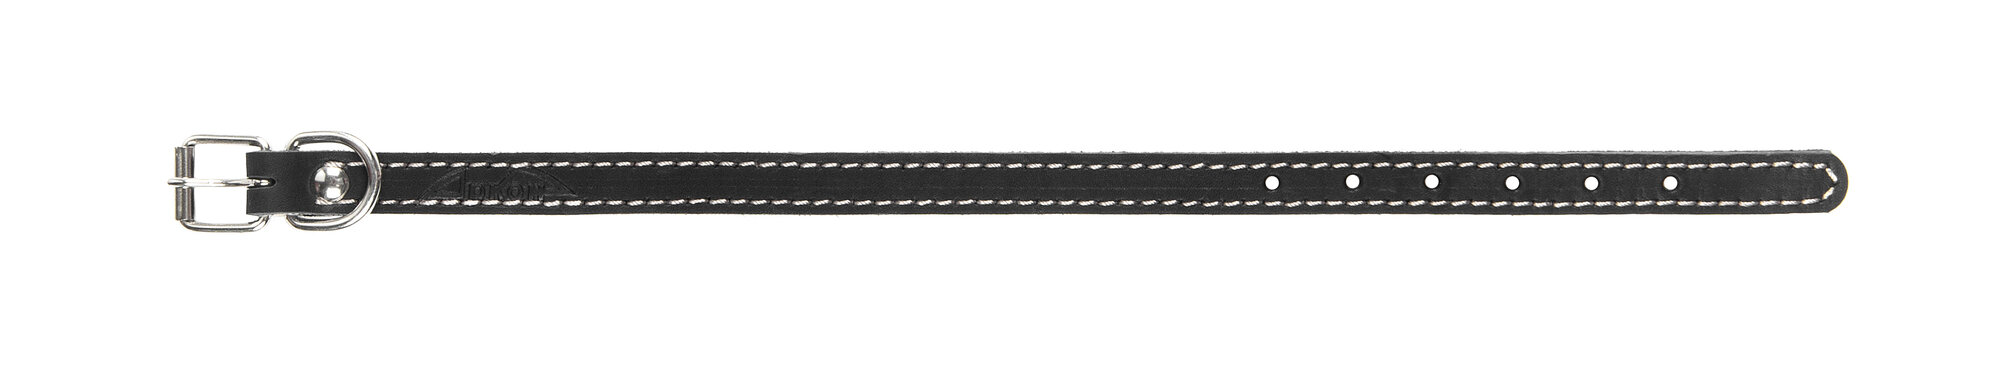 Ошейник аркон кожаный для собак с подкладом, декоративная строчка, черный (21-29 см/14 мм)